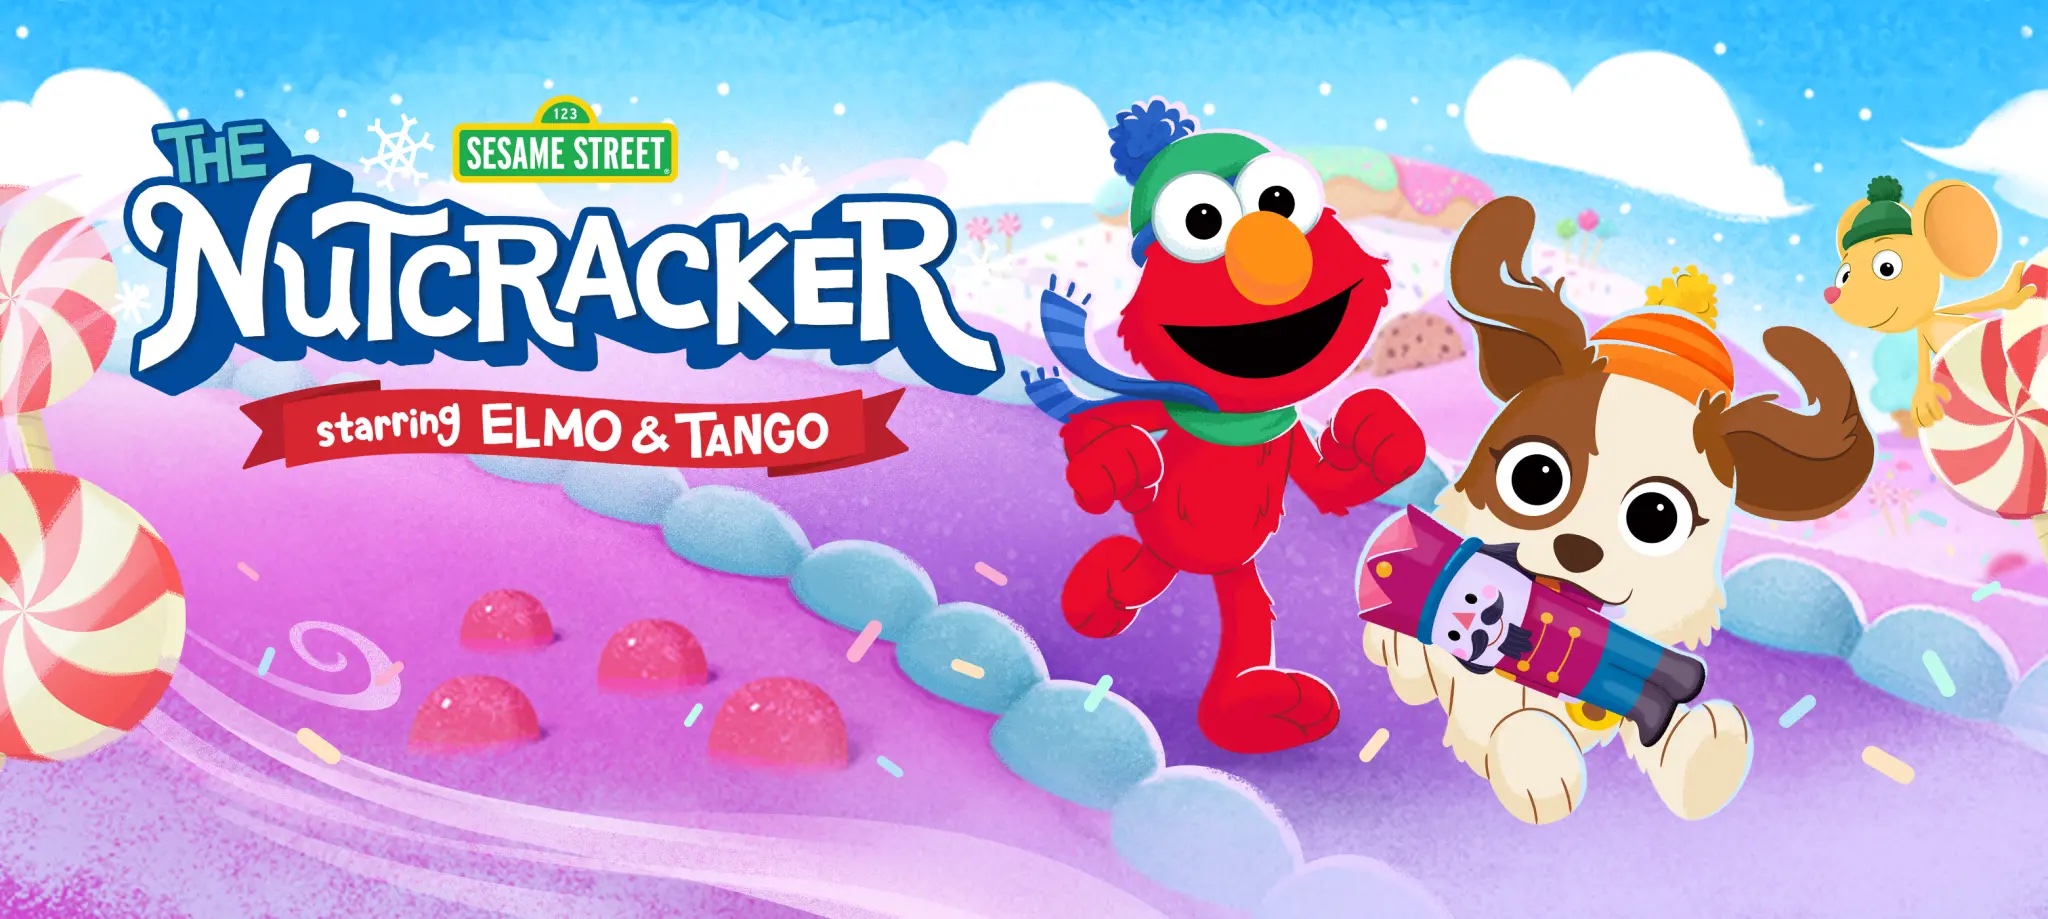 Elmo runs after Tango, his dog. Tango has a nutcracker in its mouth.